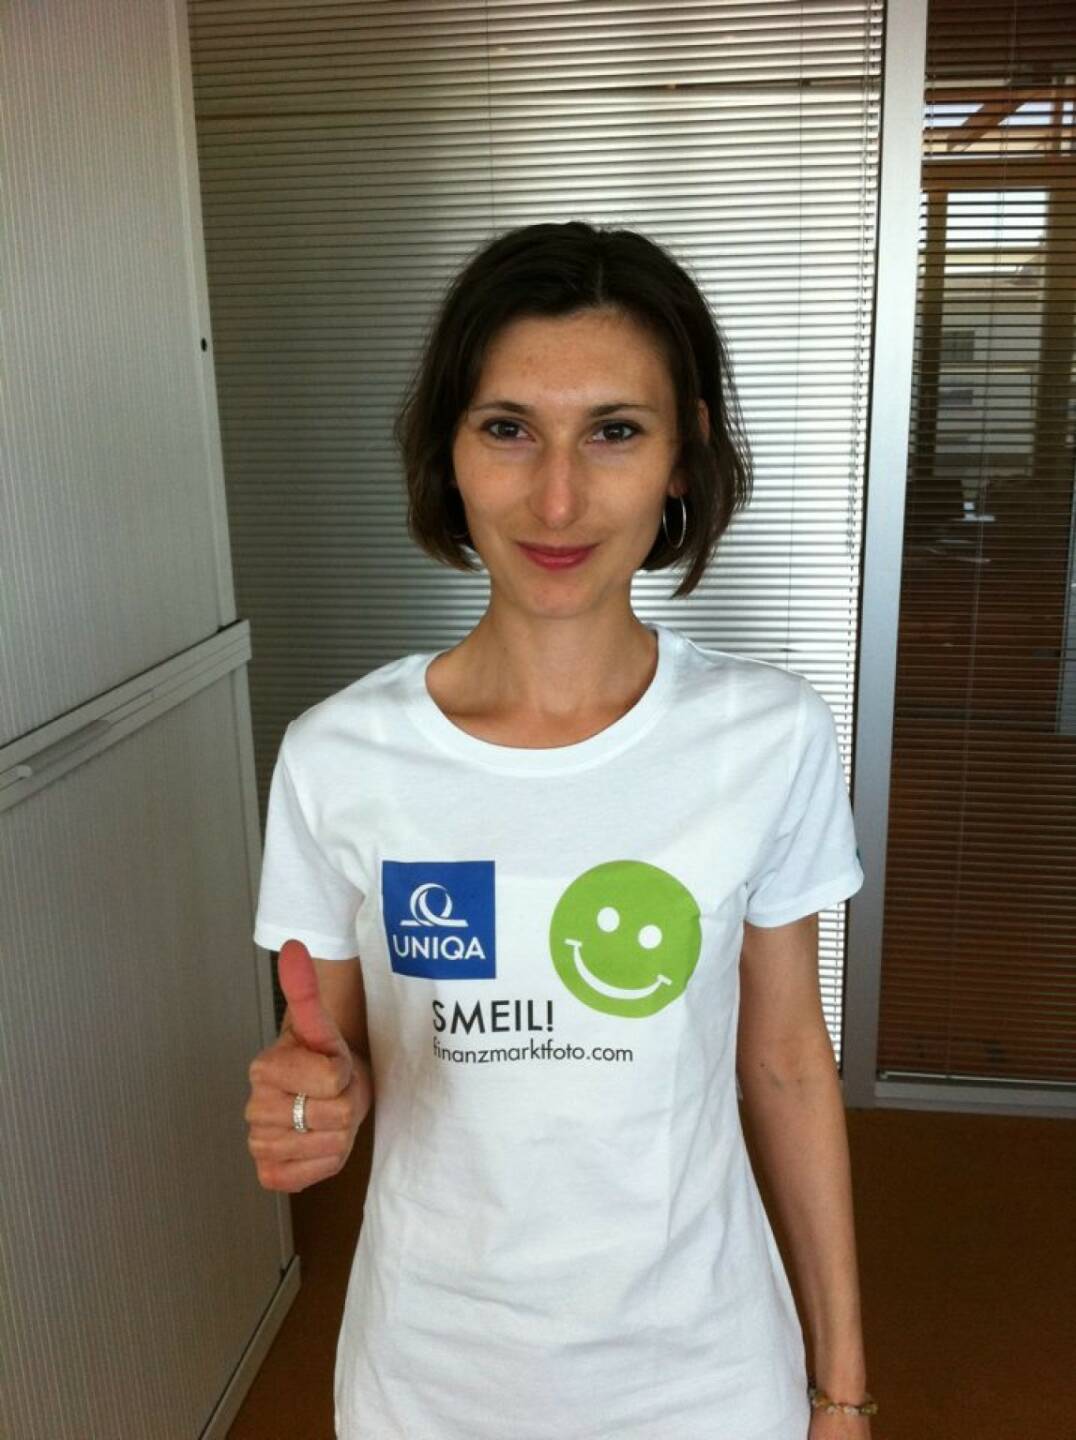 Baader Bank Smeil: Susanne Stickler, Shirt in der Uniqa Kollektion